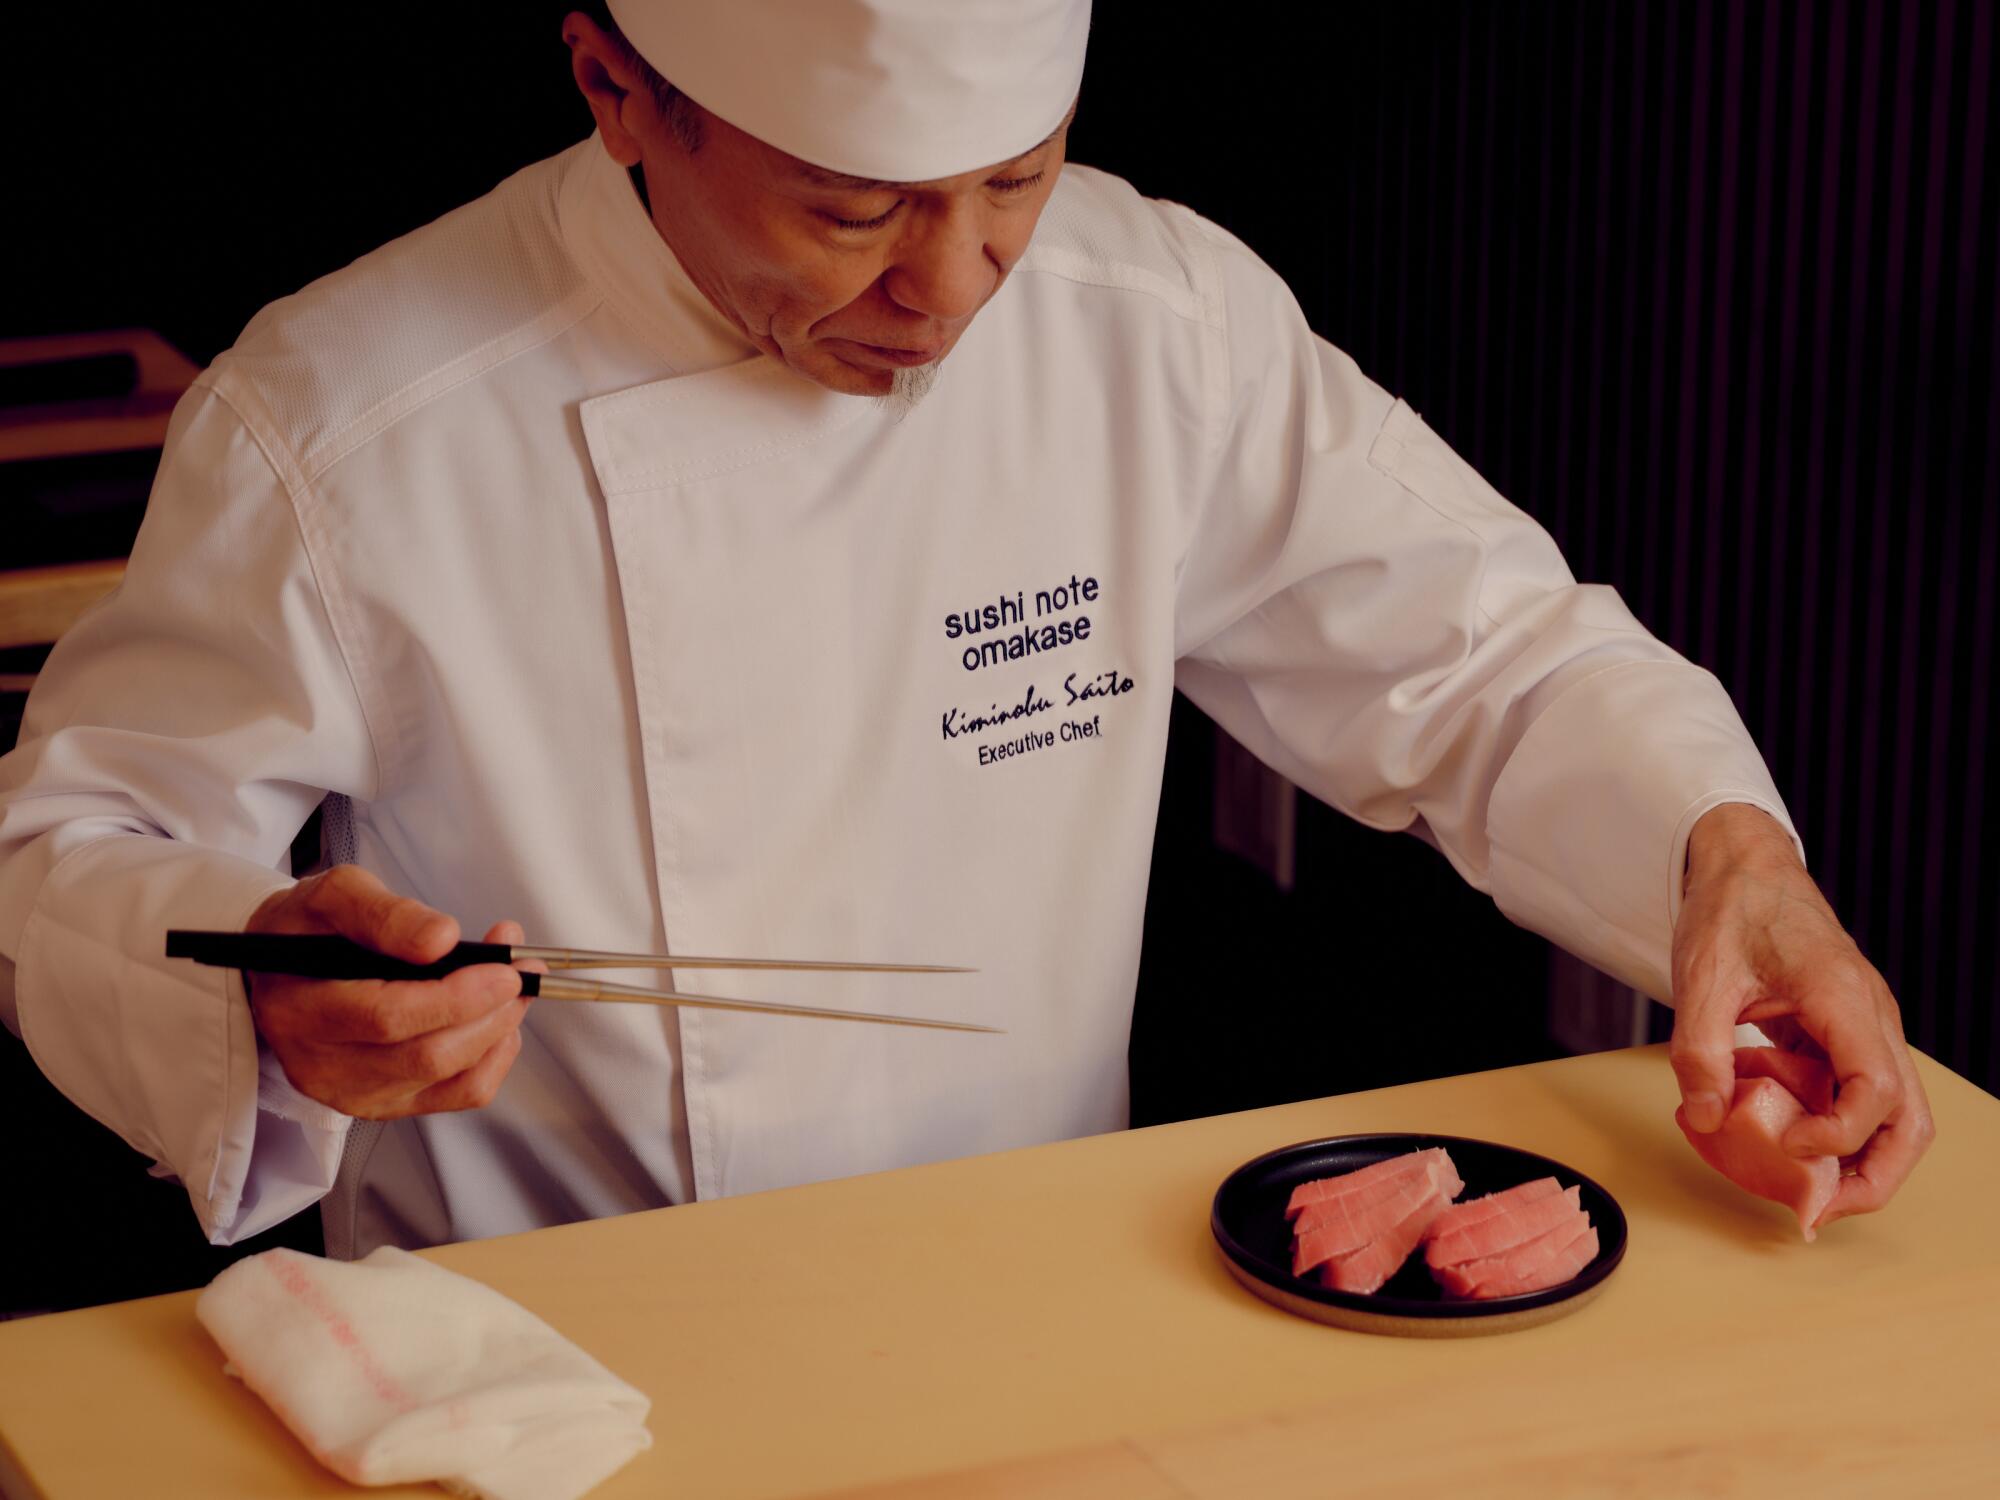 Executive chef Kiminobu Saito prepares sushi at Sushi Note.